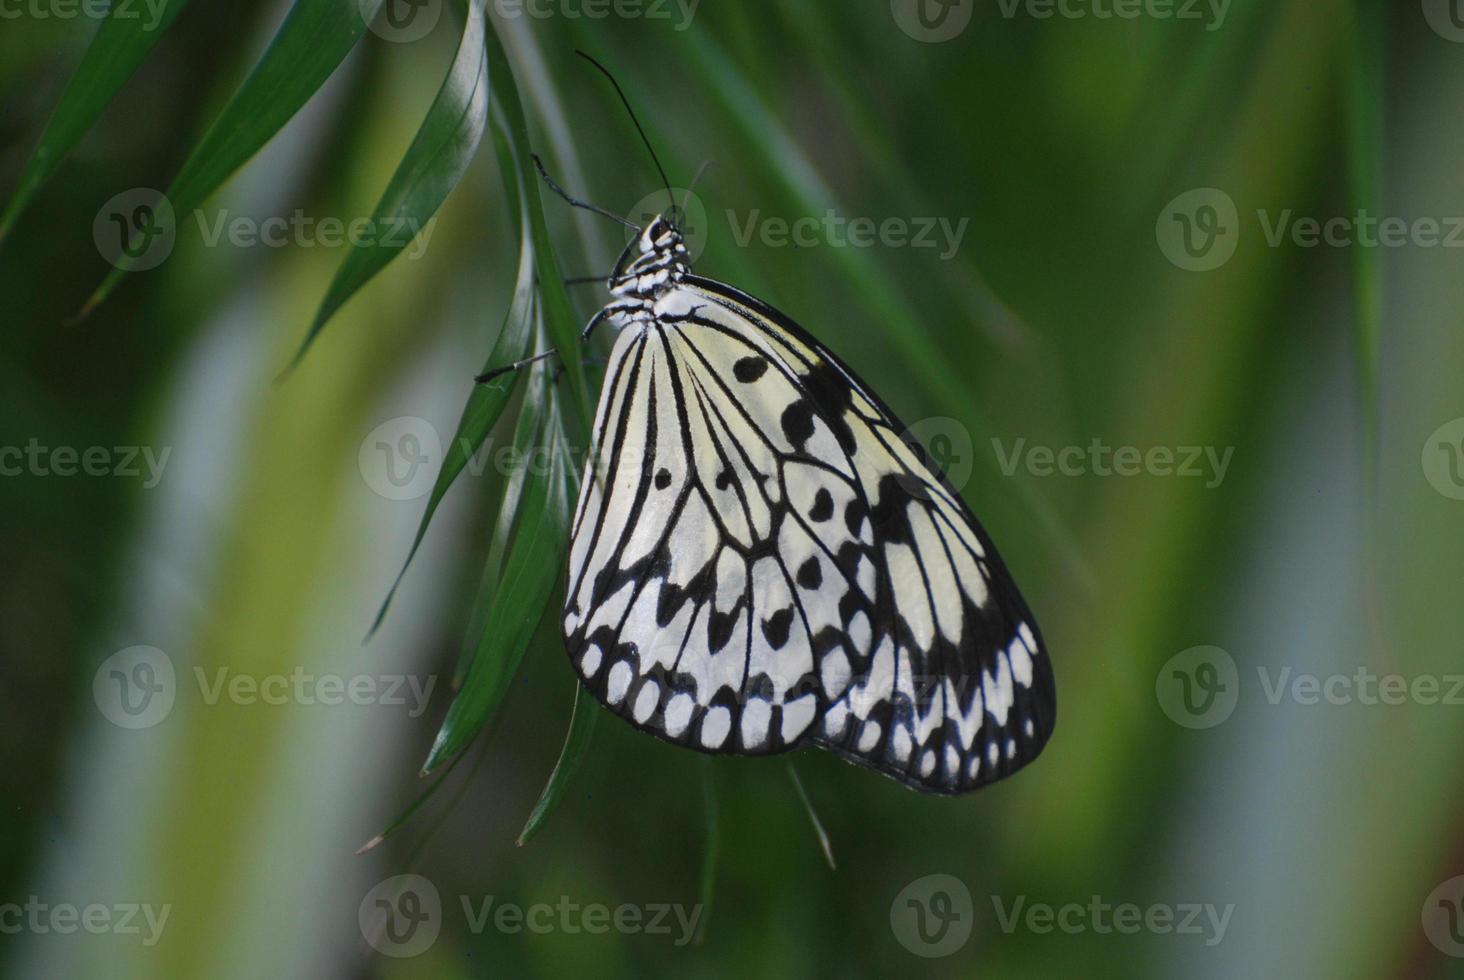 rijstpapier vlinder zittend op groen gebladerte foto